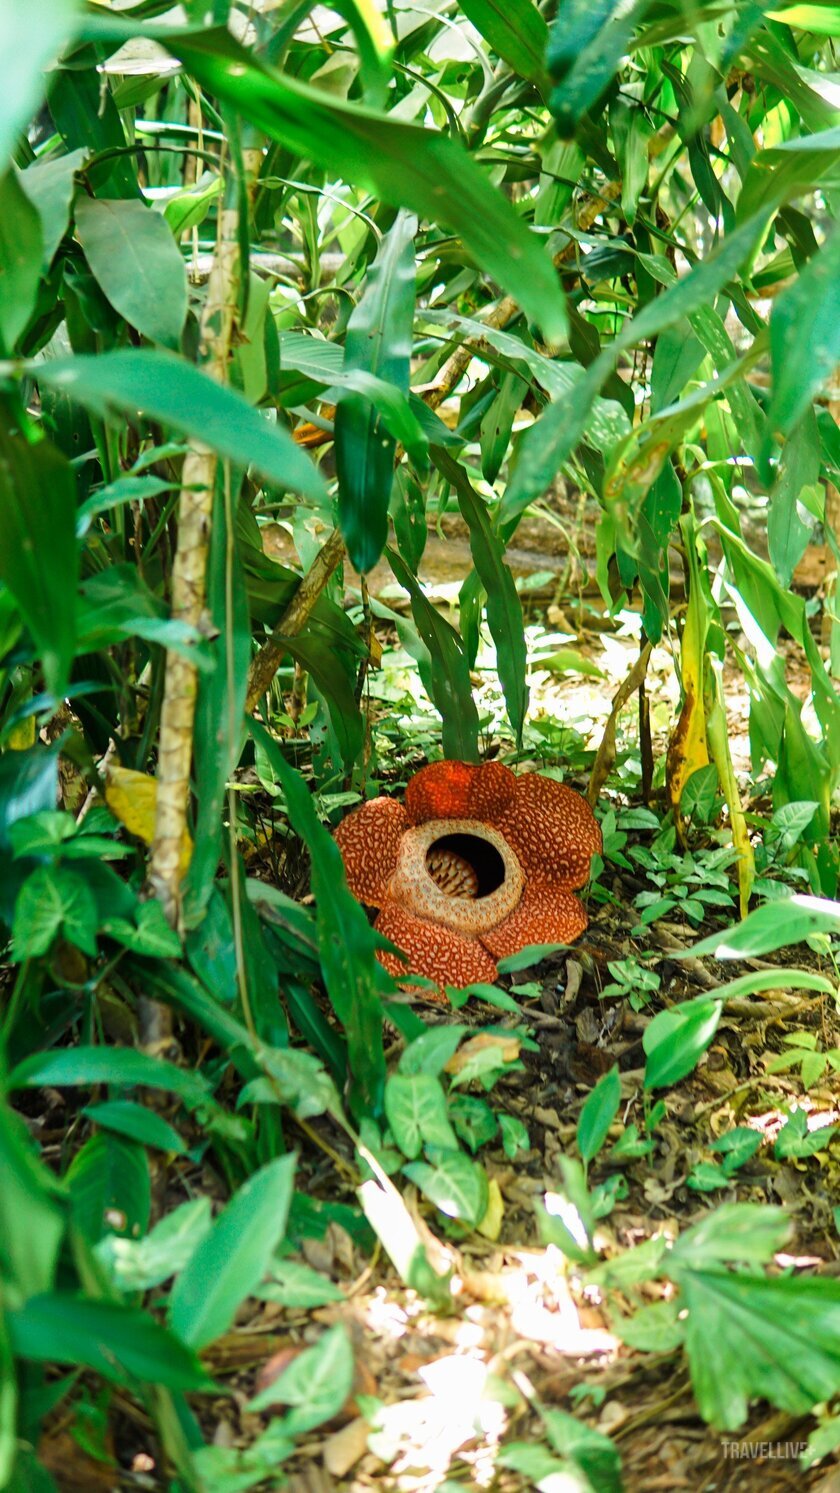 Hoa khổng lồ có đốm màu đỏ mọc lên một cách khó đoán, khiến chúng là sản phẩm du lịch khó bỏ qua của nhiều du khách quốc tế khi đến Malaysia